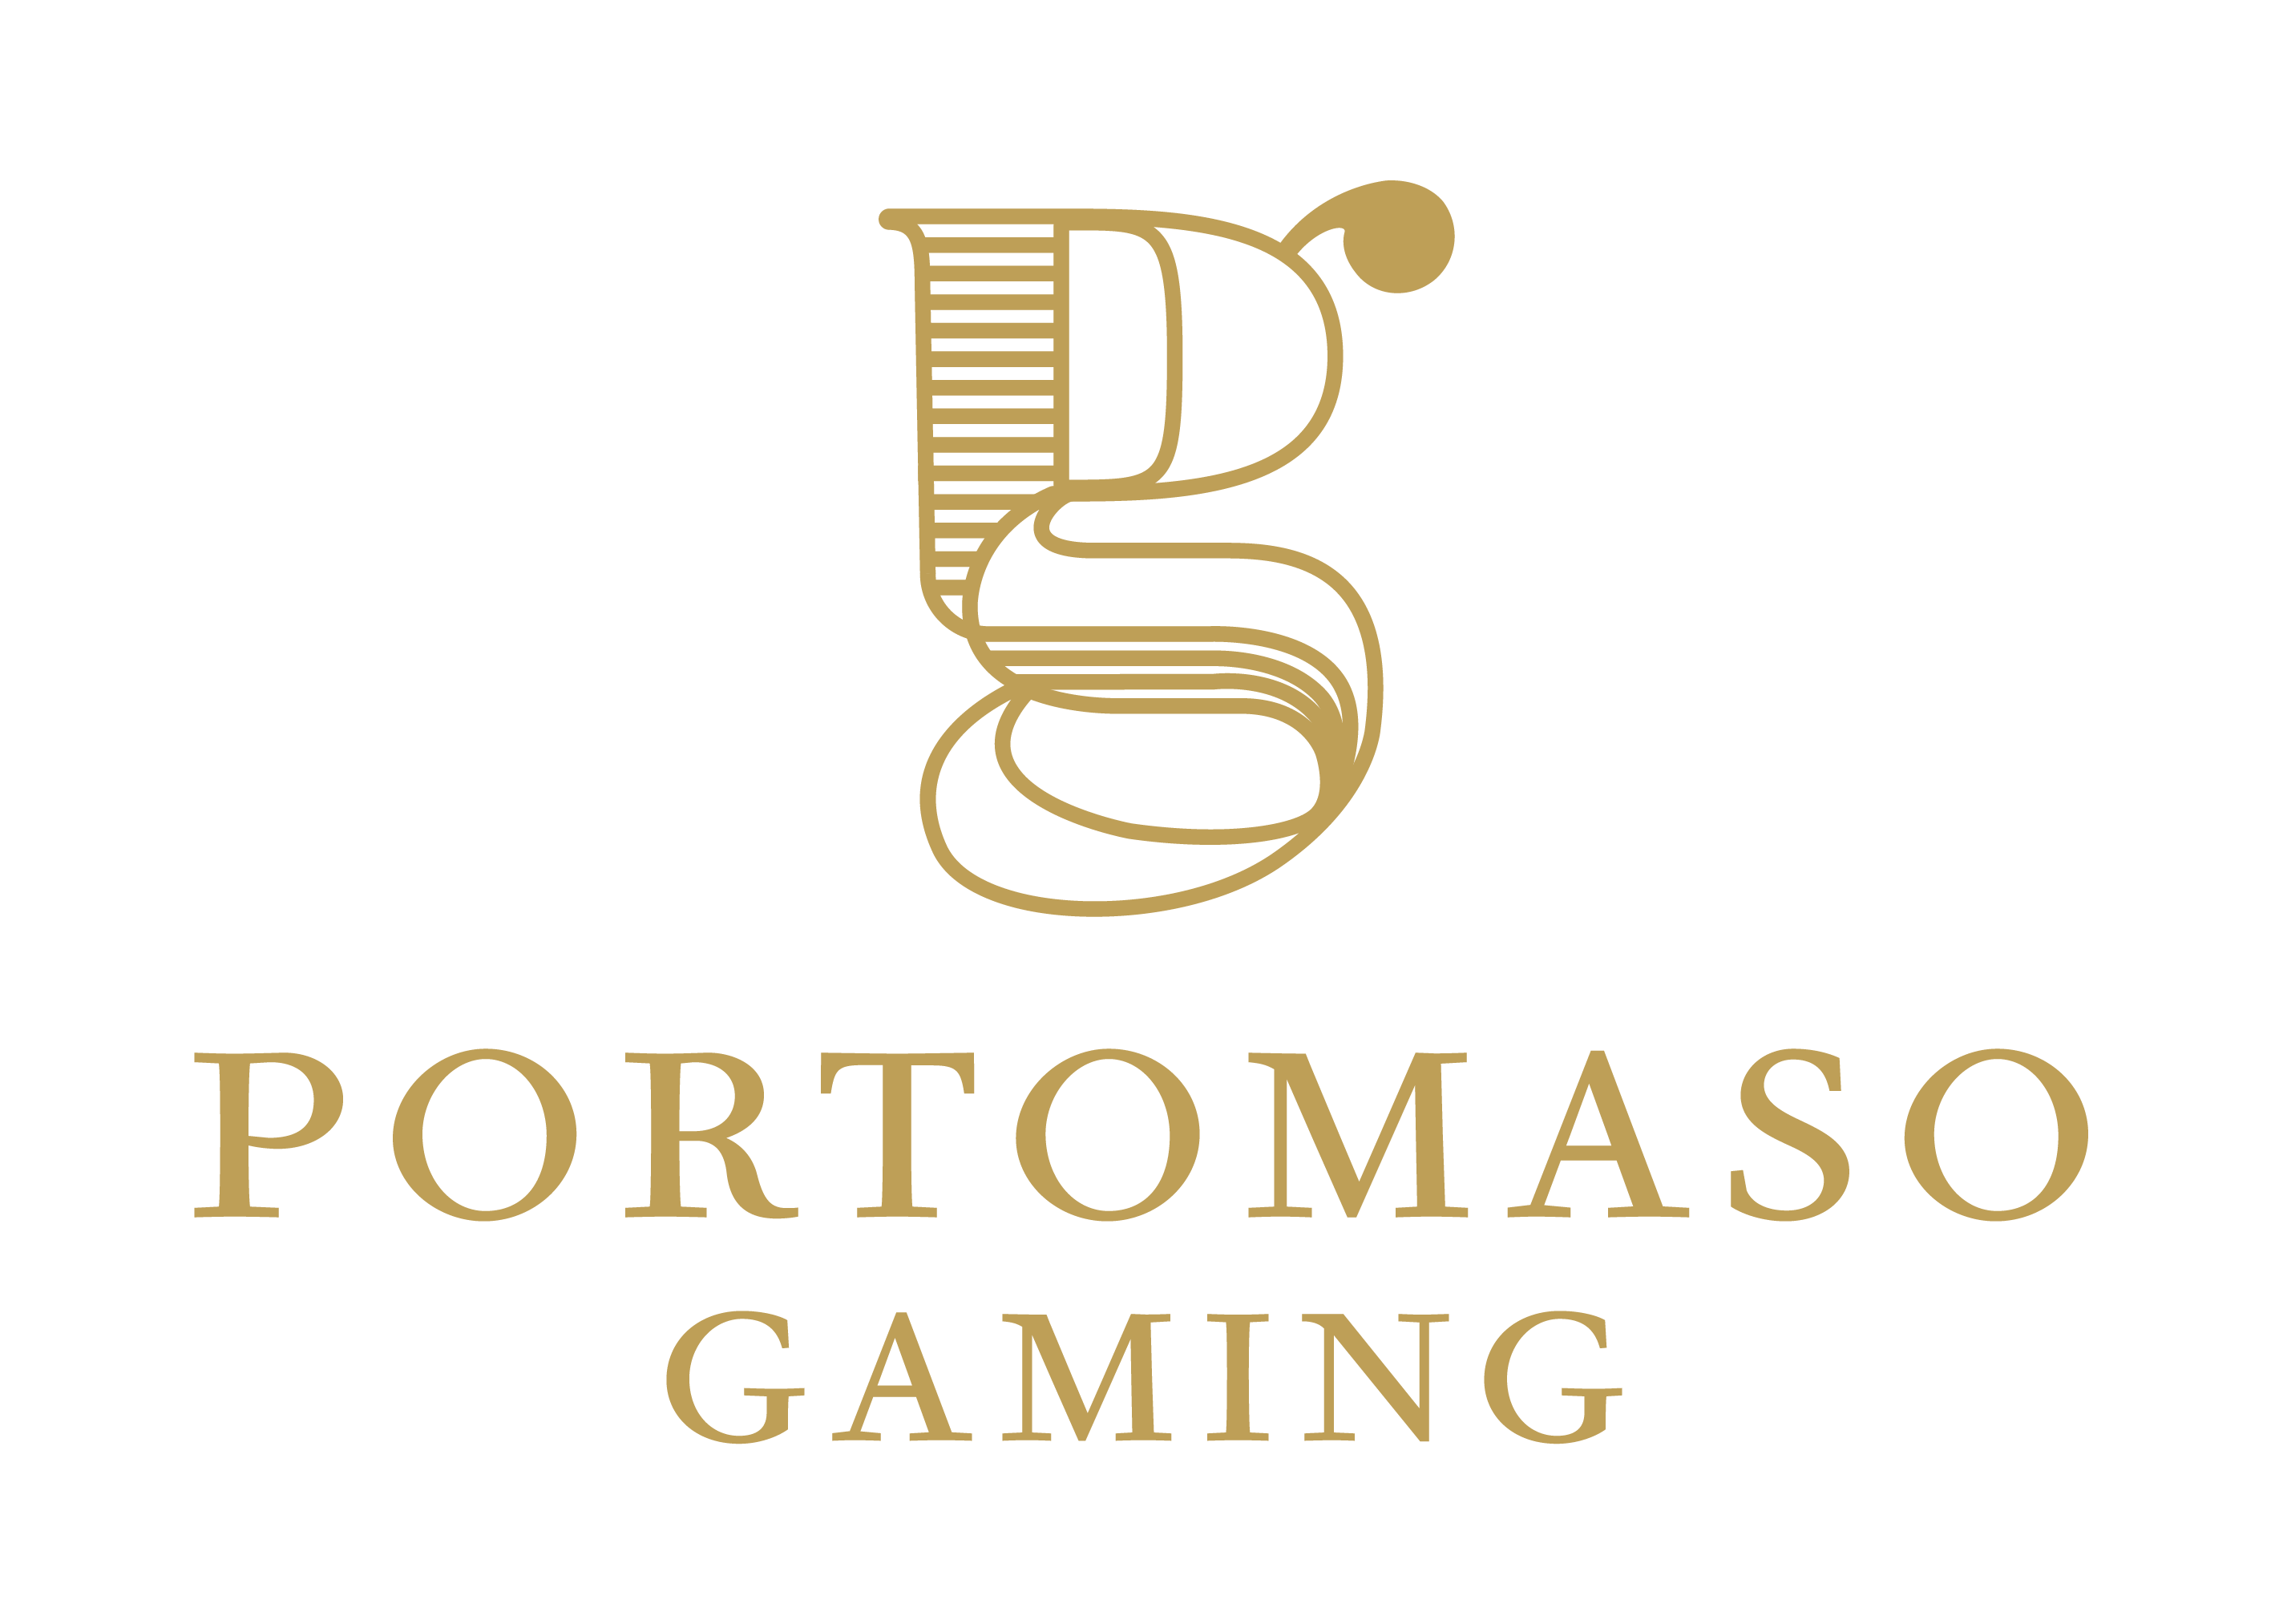 Portomaso Gaming 게임